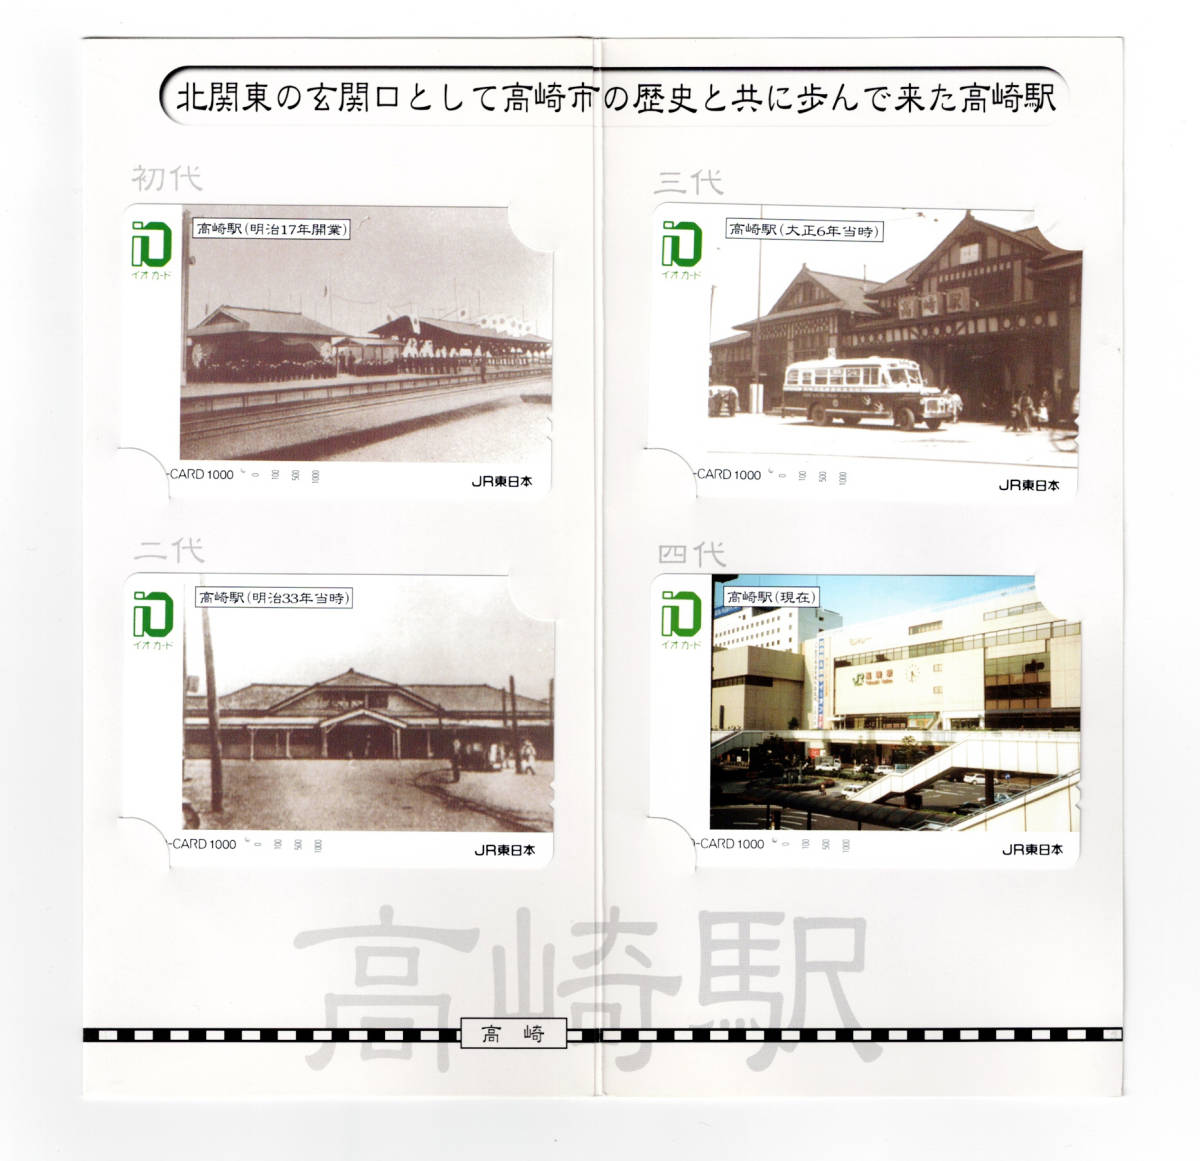 *JR Восточная Япония * Takasaki станция . 4 плата Takasaki станция 100 год история io-card *4 листов комплект * картон есть *1 дыра использованный 